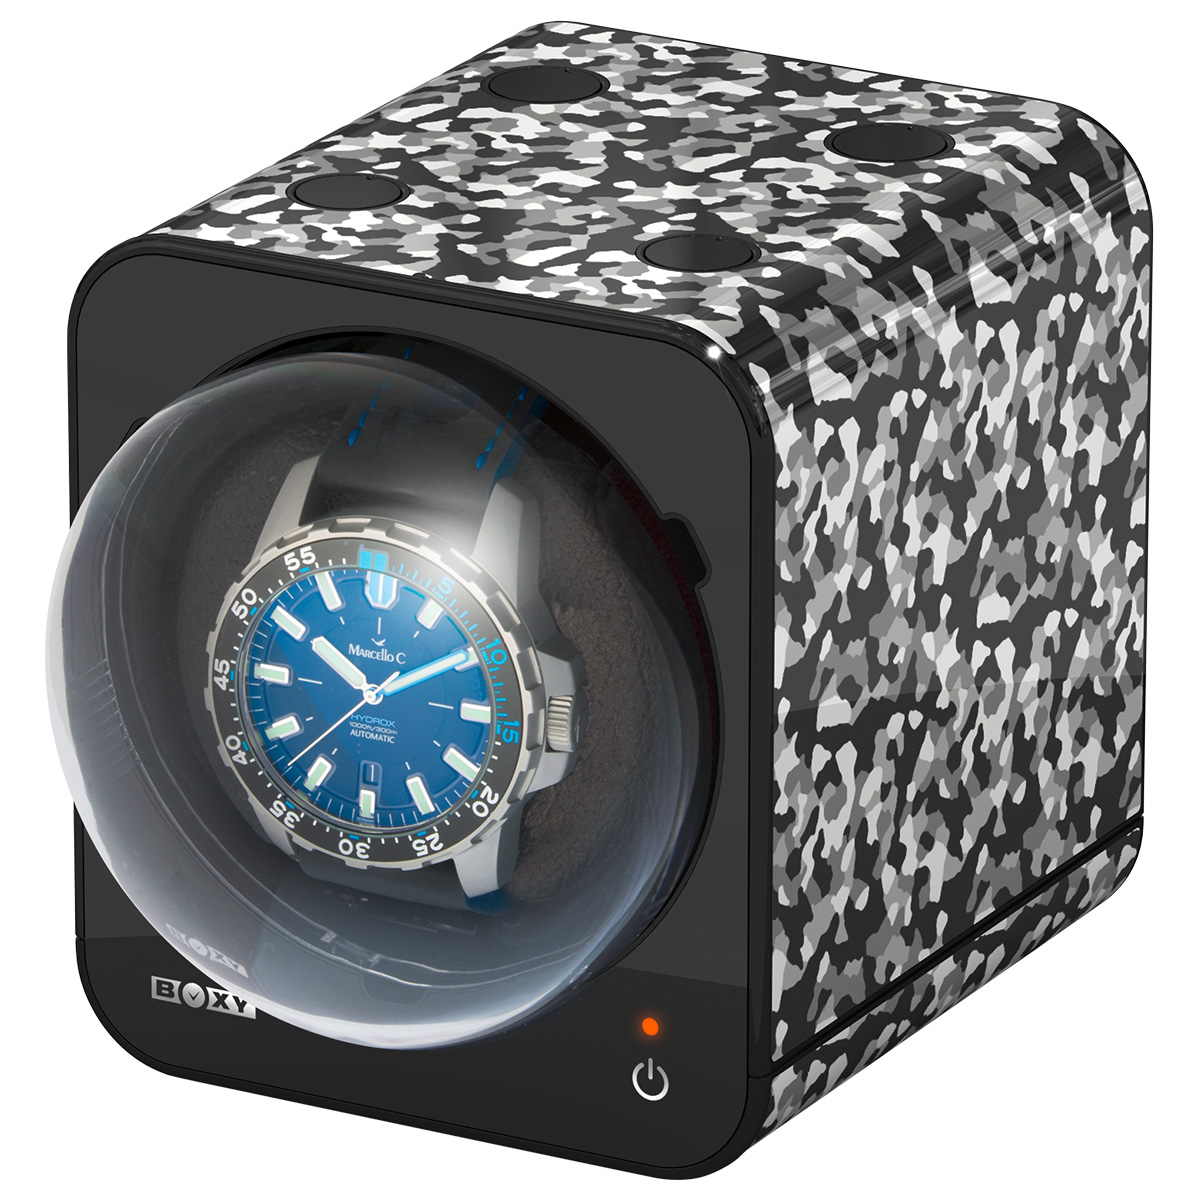 Boxy Fancy Brick Uhrenbeweger für eine Uhr, Camouflage schwarz und weiß, kombinierbar, ohne Adapter